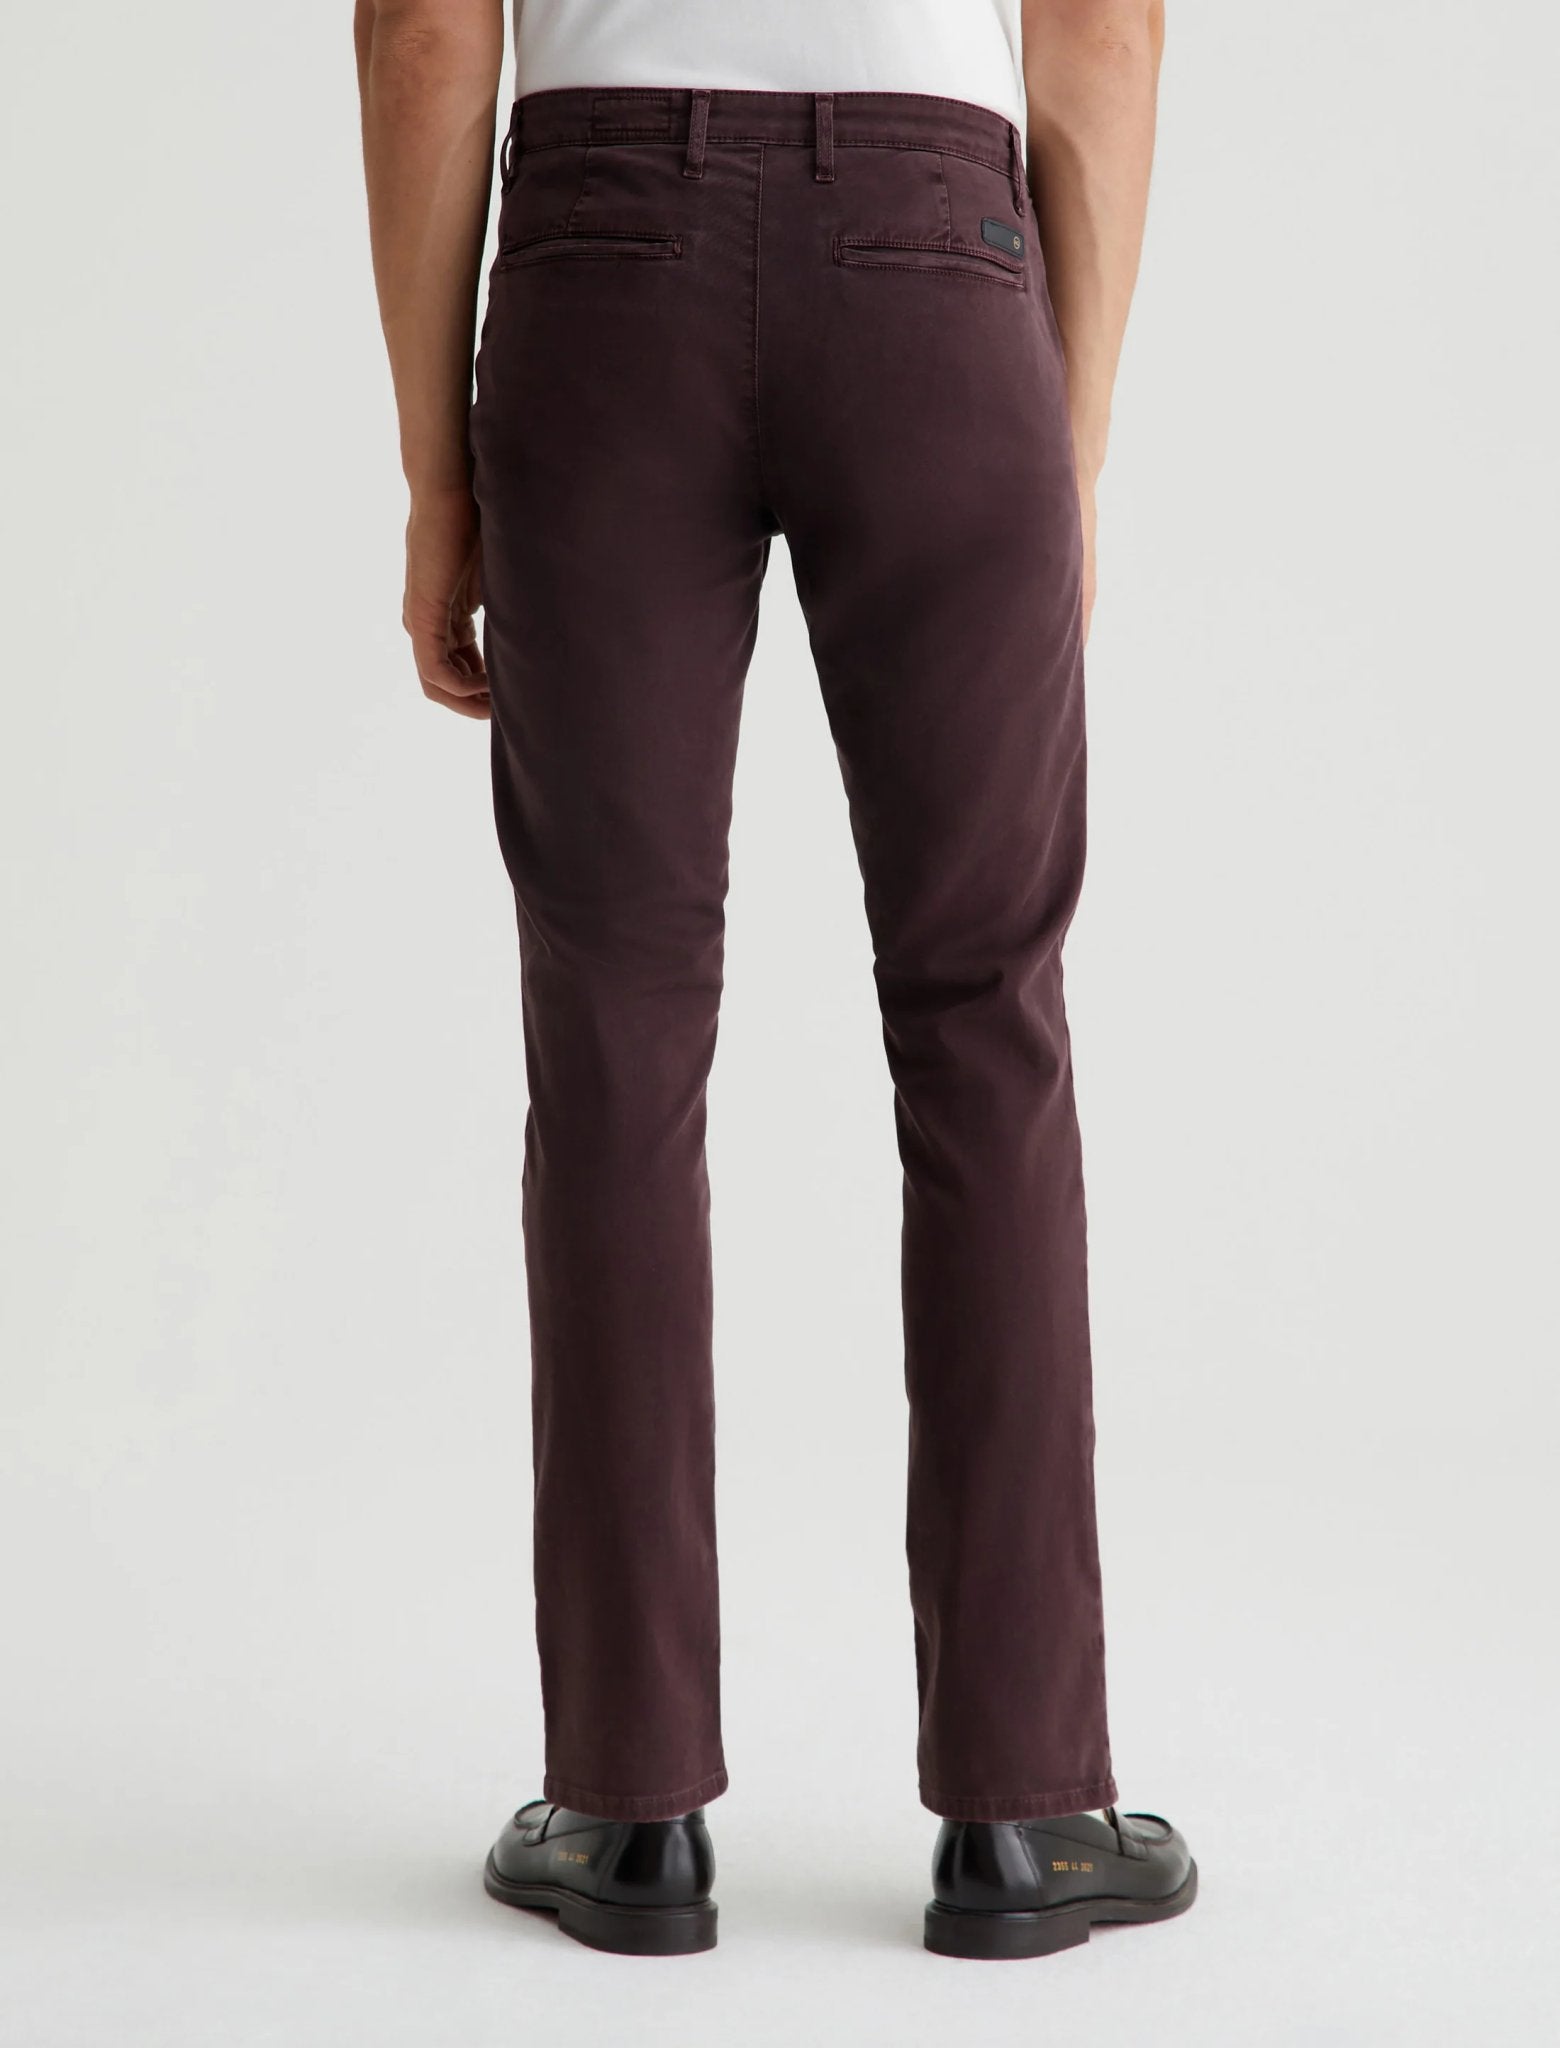 Jamison Slim Tailored Trouser - AG Jeans - Danali - 1912SRT-SLPOIR-30